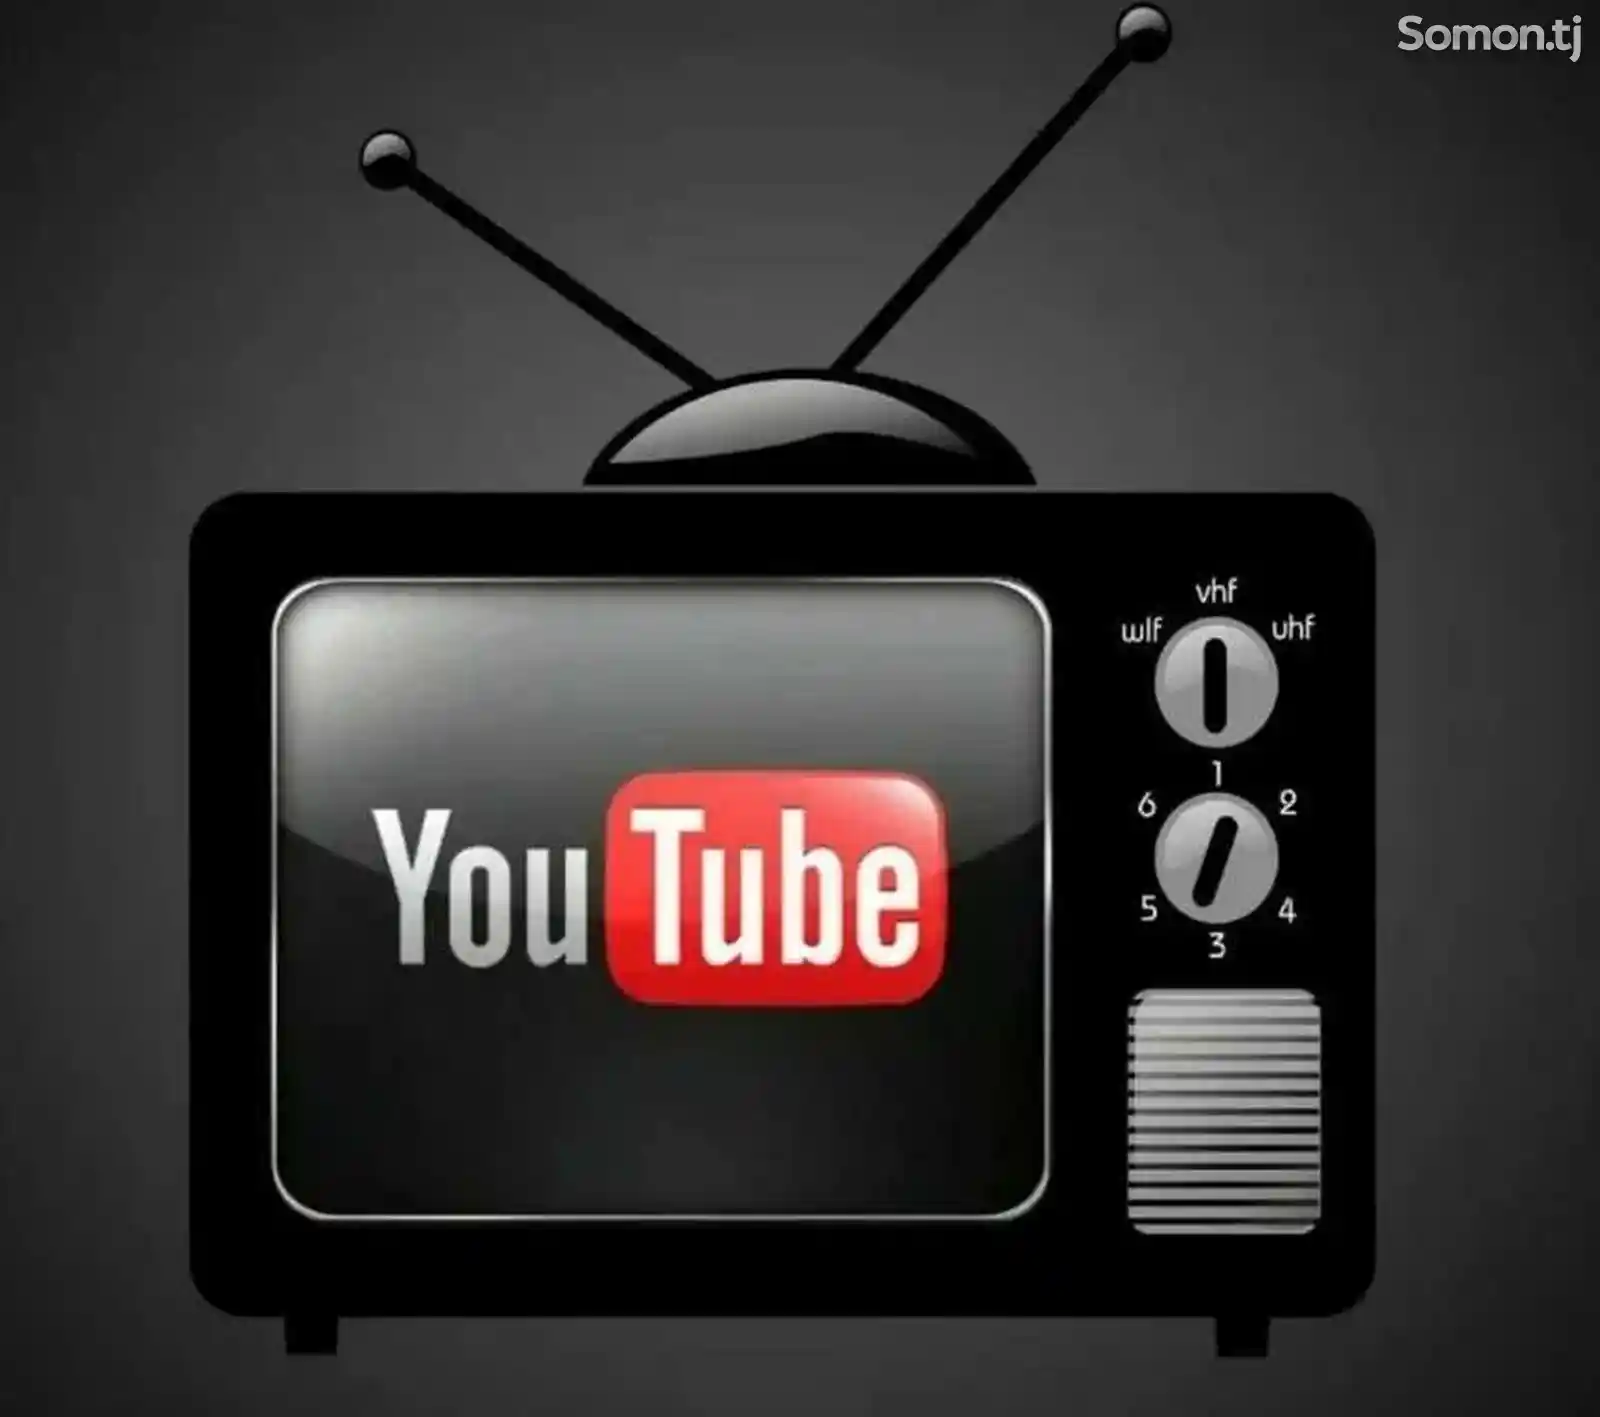 Услуги настройки Wi-Fi роутера YouTube на TV-4